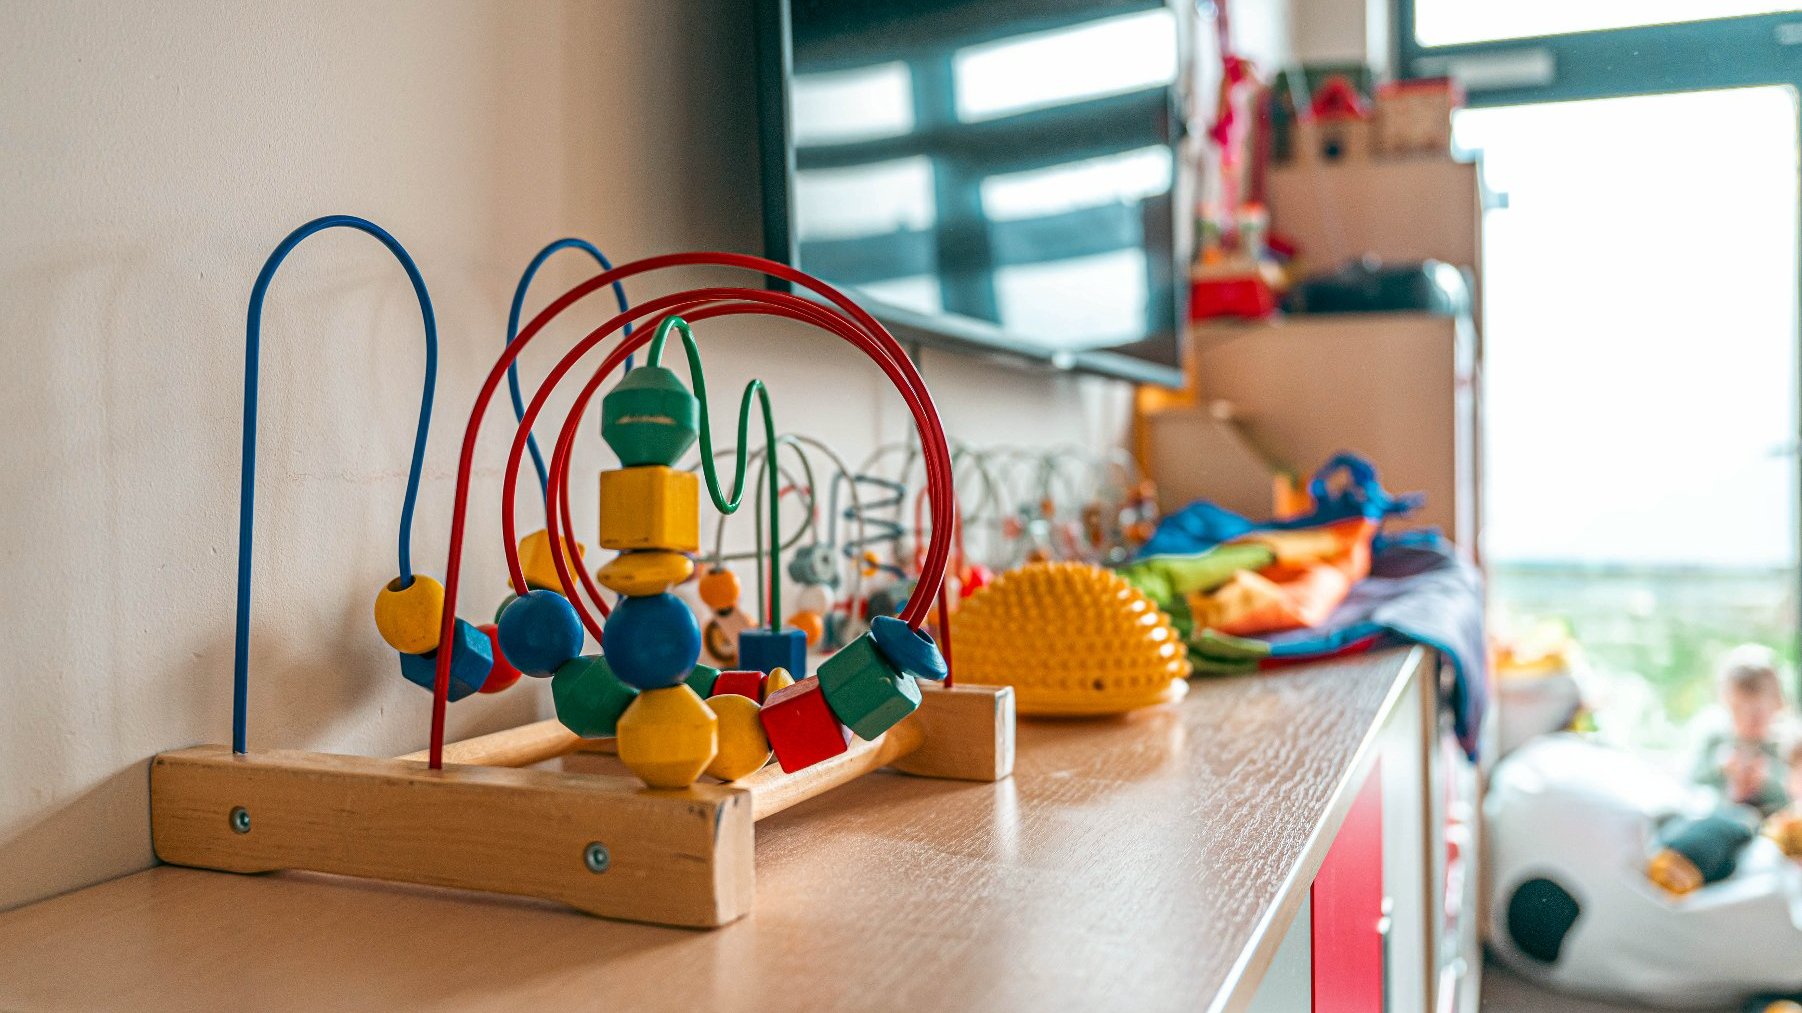 Na zdjęciu zabawki dla dzieci stojące na półce w sali żłobka